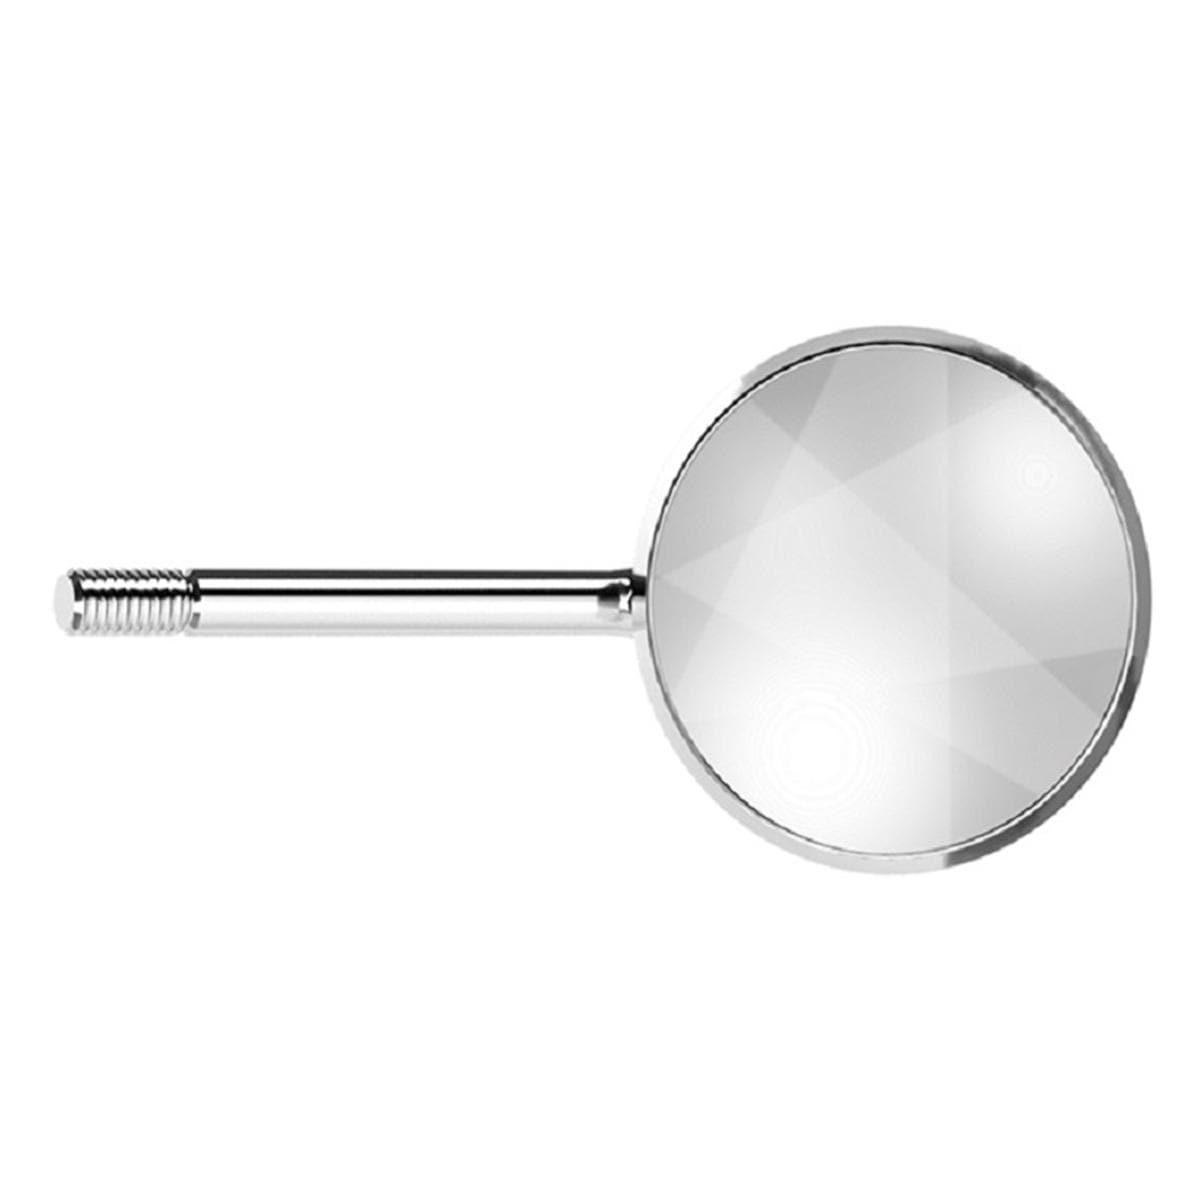 Acteon Mondspiegels rhodium - REF. MP3324PH, Size 5 (24 mm), 12 stuks